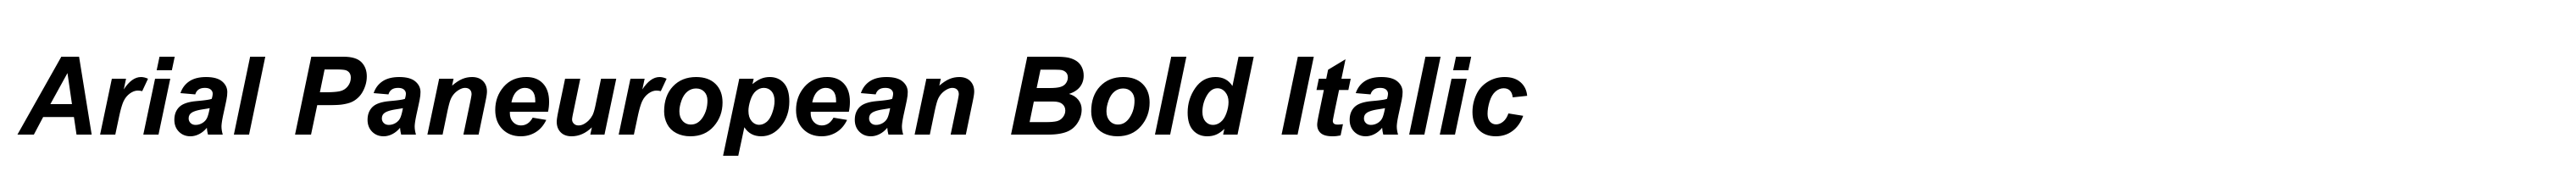 Arial Paneuropean Bold Italic